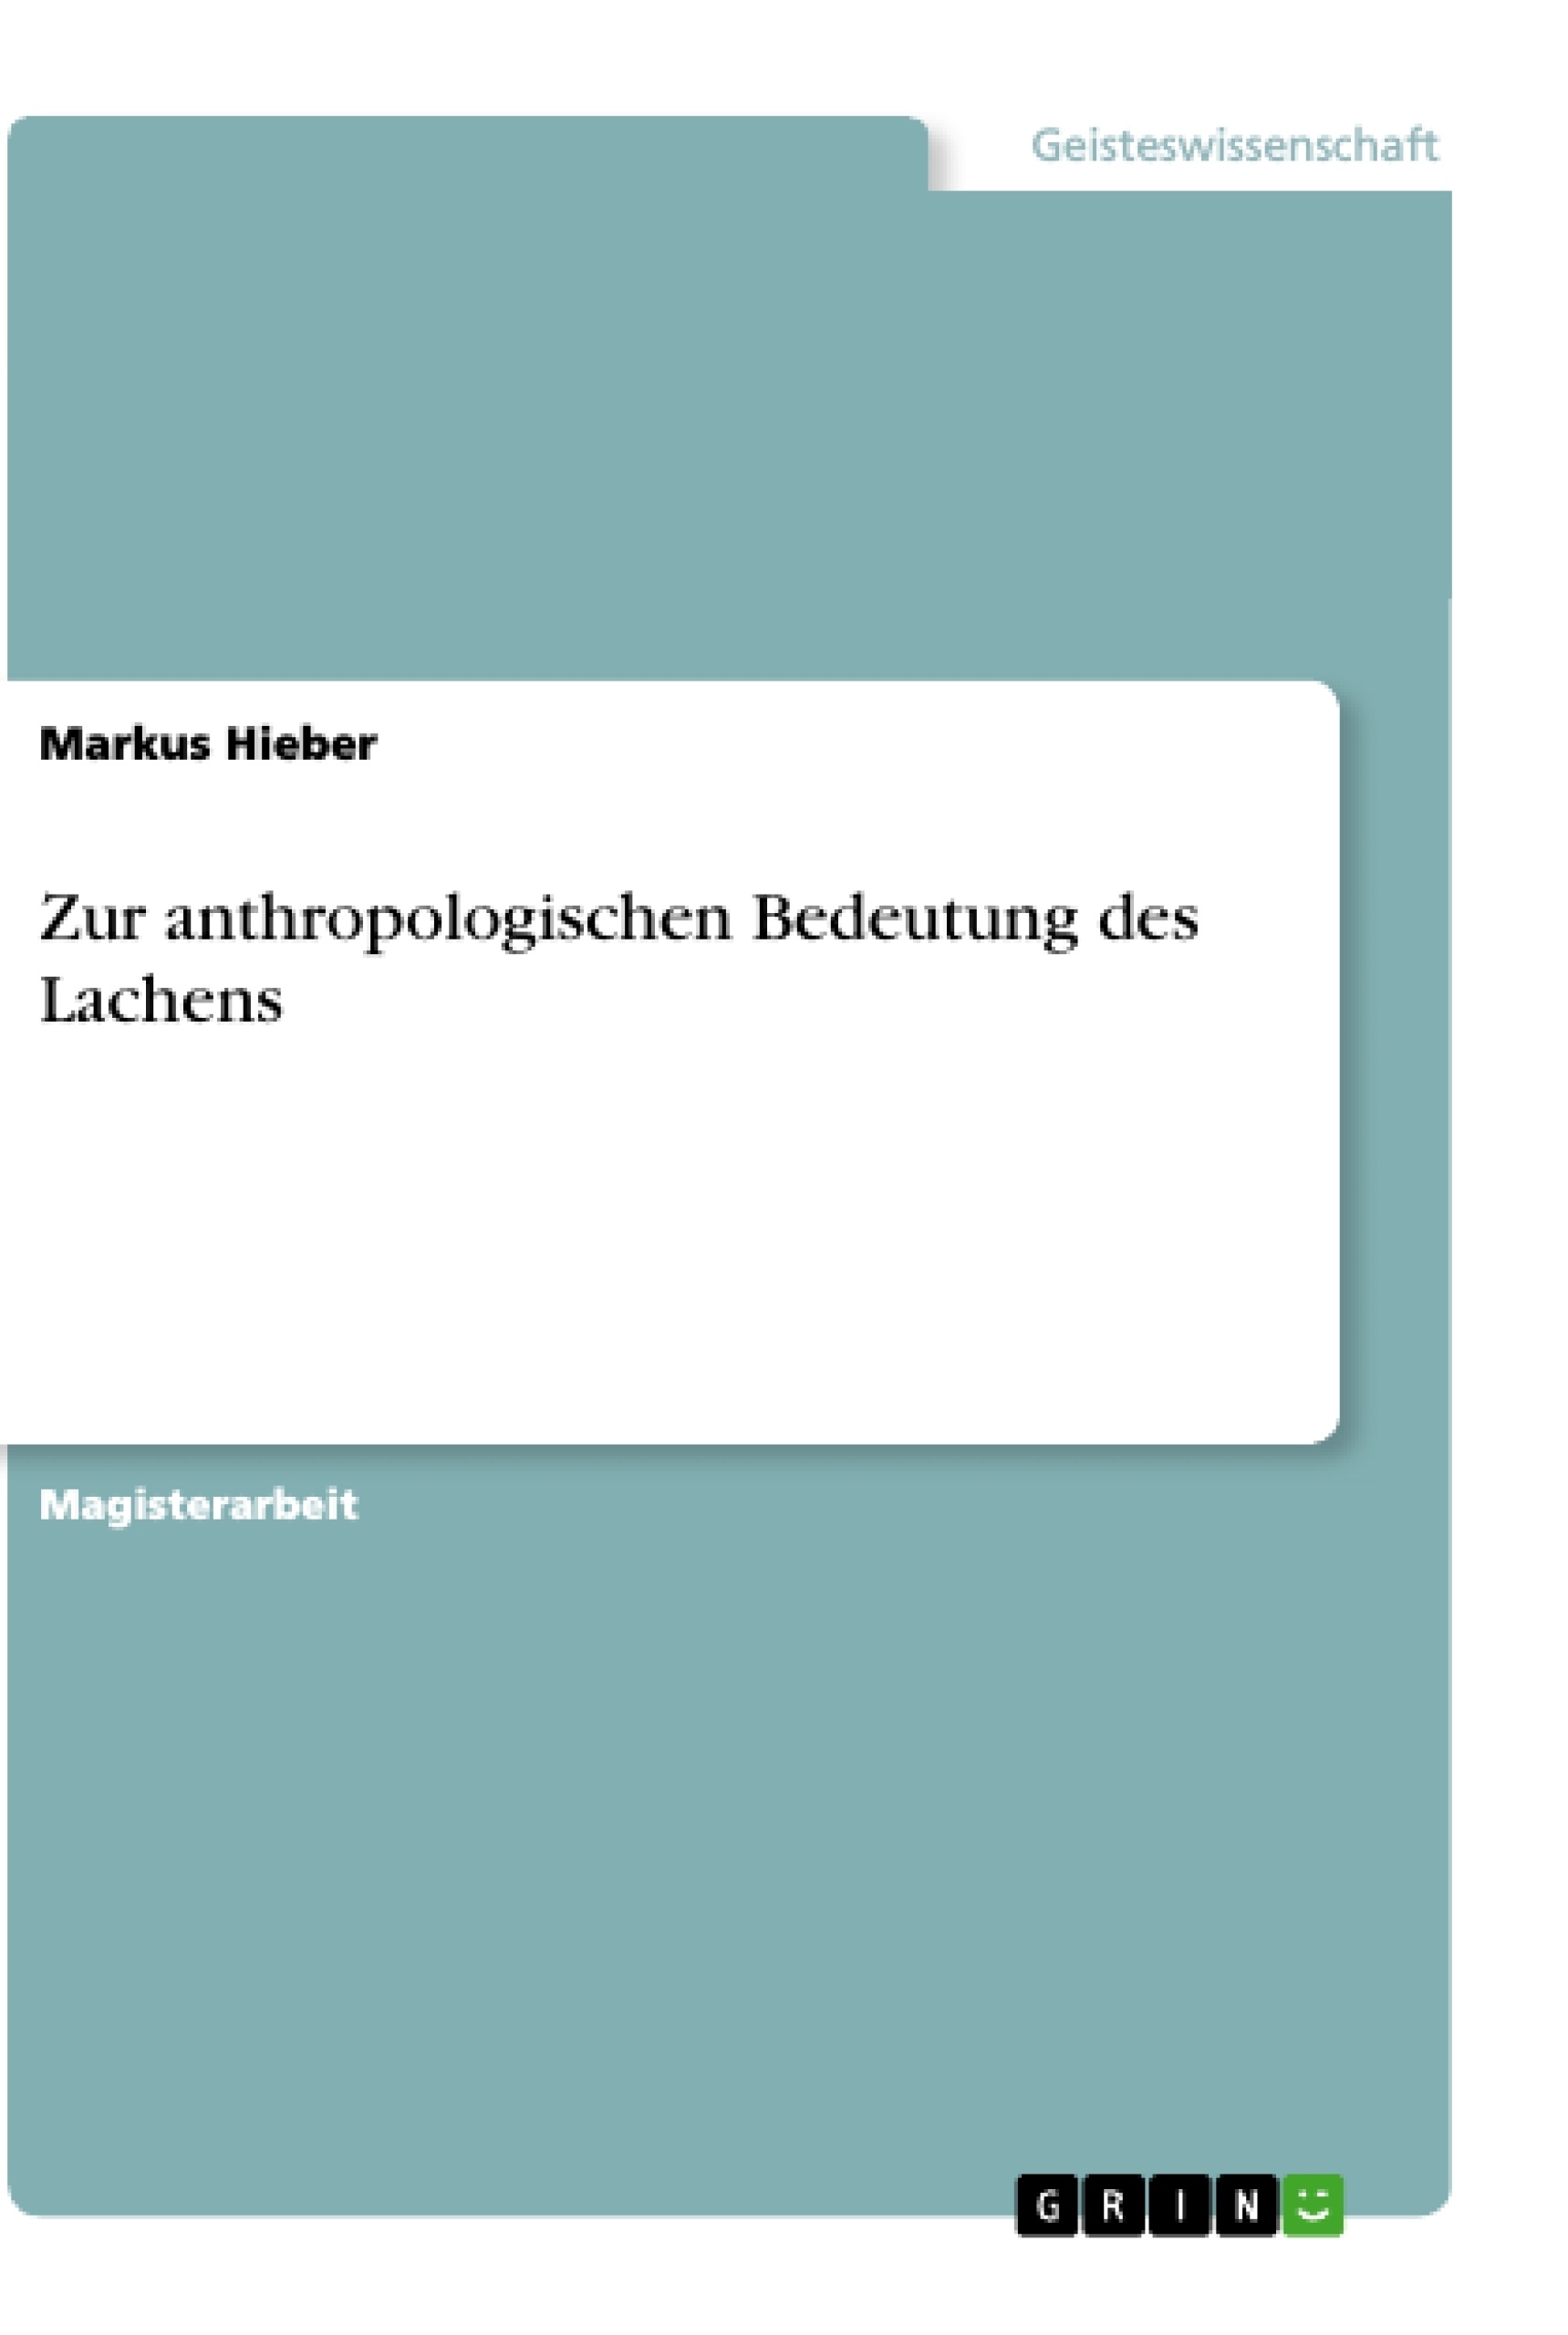 Title: Zur anthropologischen Bedeutung des Lachens